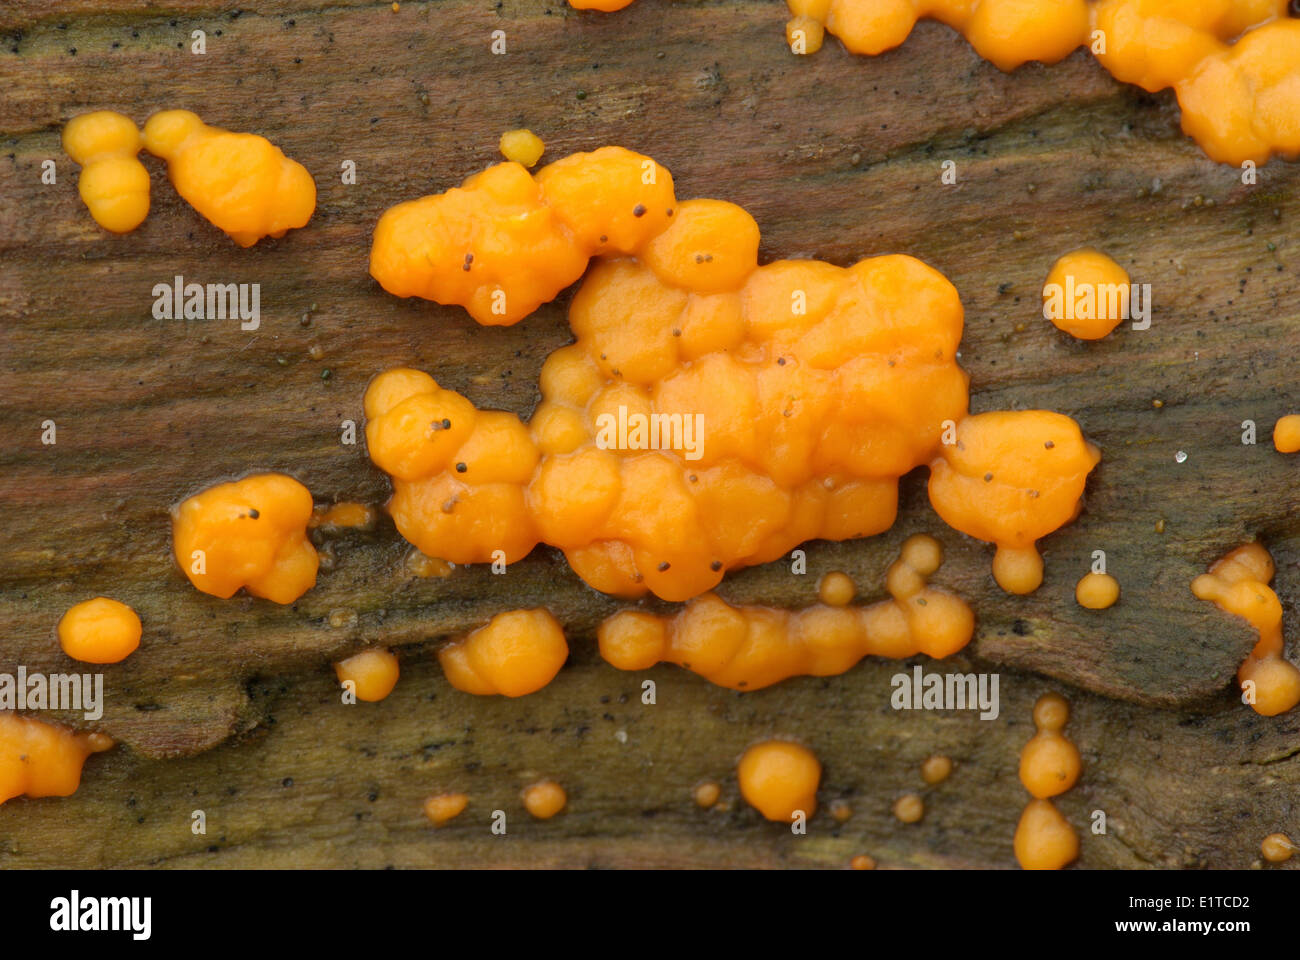 La commune de couleur orange vif sur le bois mort Jellyspot Banque D'Images